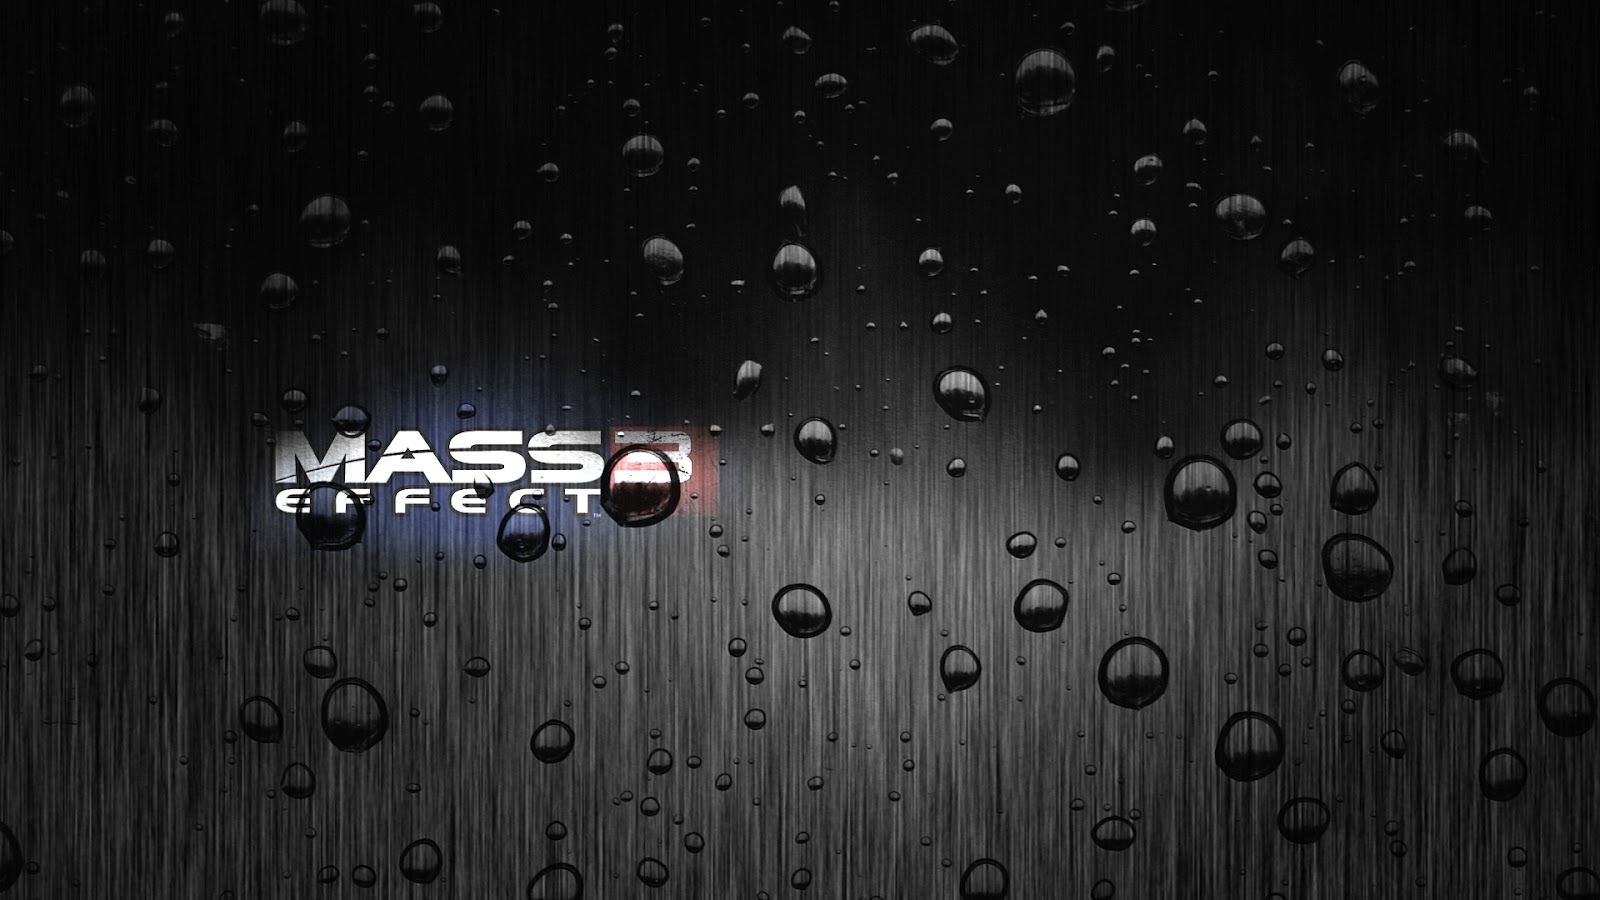 mass effect live wallpaper,black,water,text,rain,drop